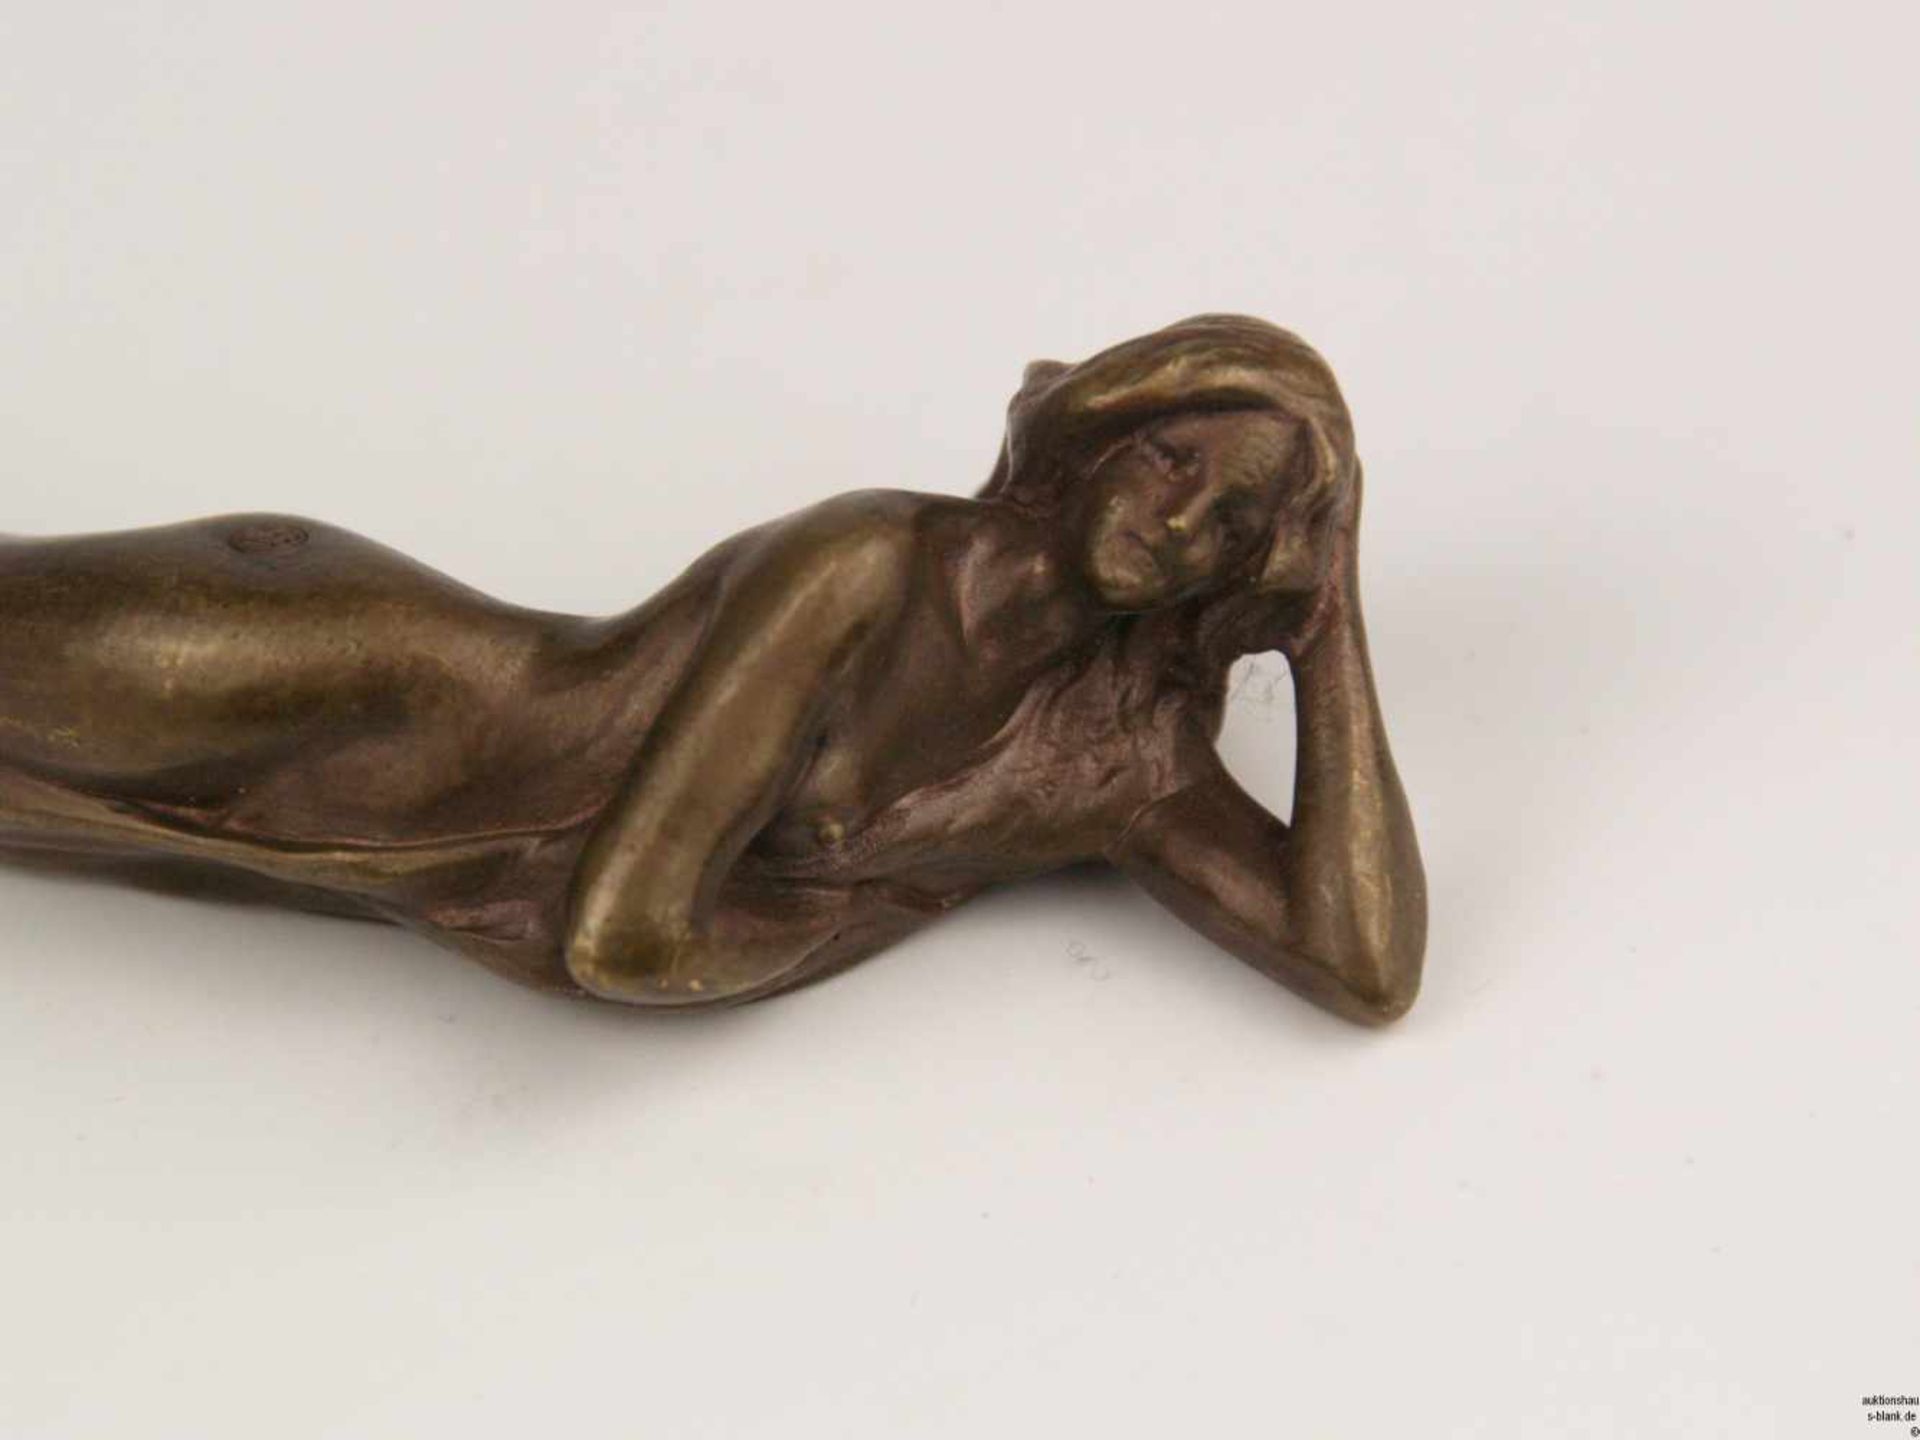 Brieföffner - Wiener Bronze, Jugendstil, Griff mit plastischem liegendem Damenakt, punziert 'FBW' ( - Bild 2 aus 5